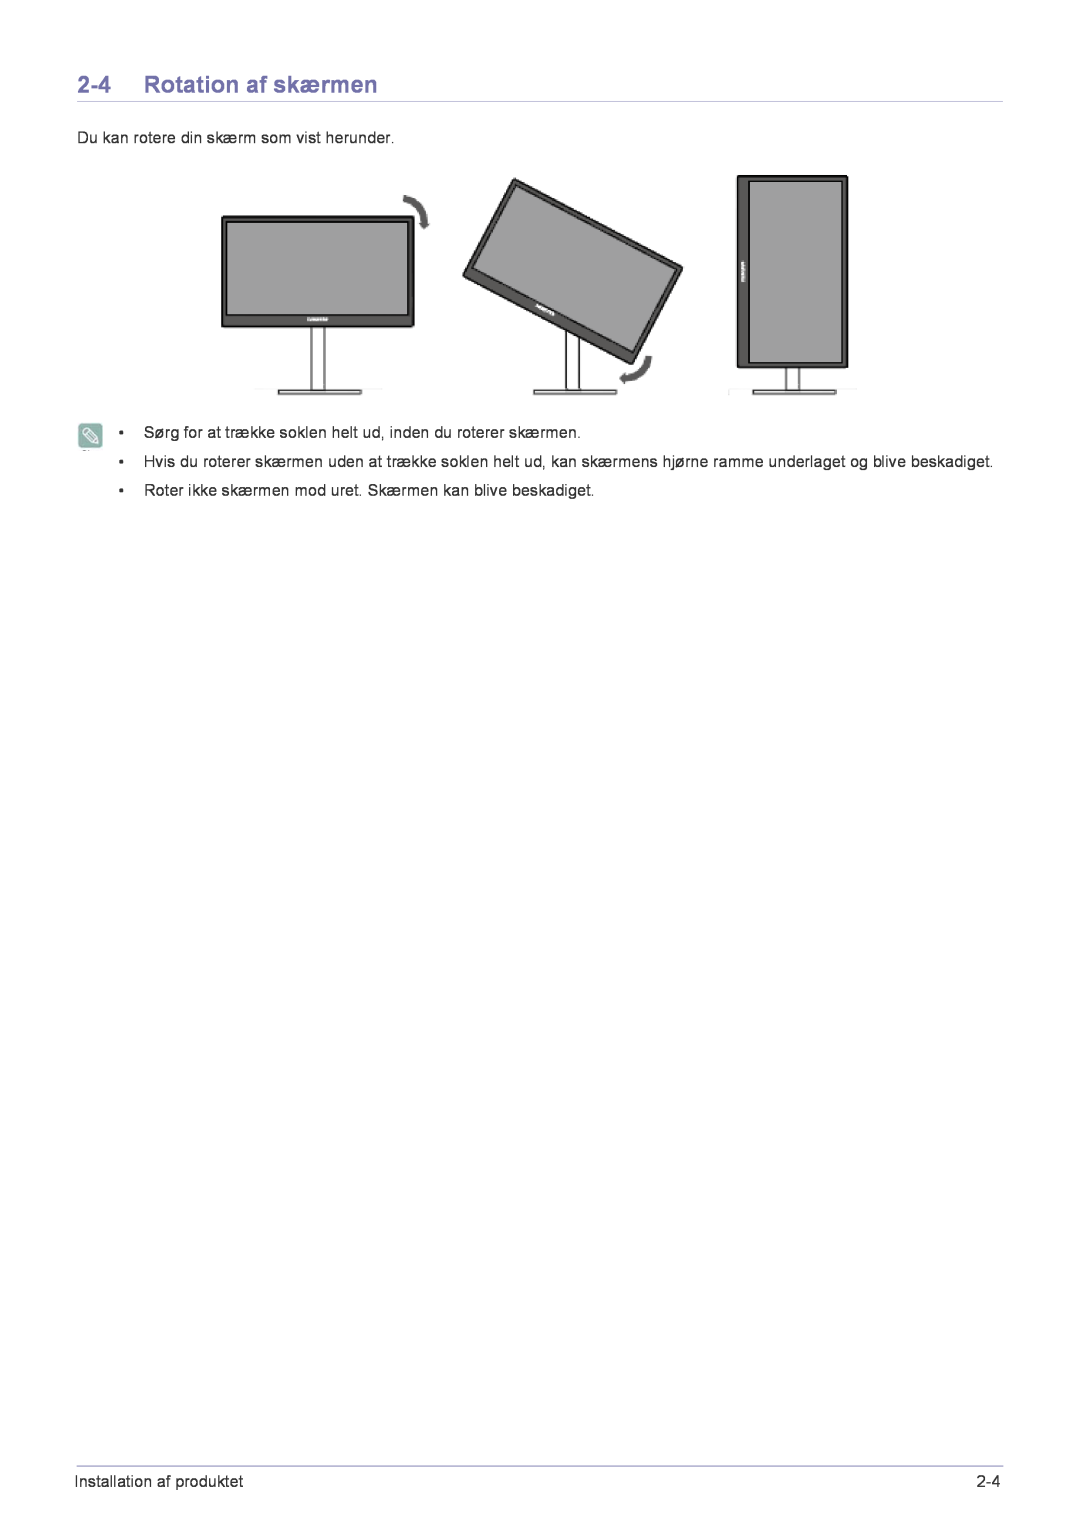 Samsung LF22NPBHBNP/EN manual Rotation af skærmen, Du kan rotere din skærm som vist herunder, Installation af produktet 